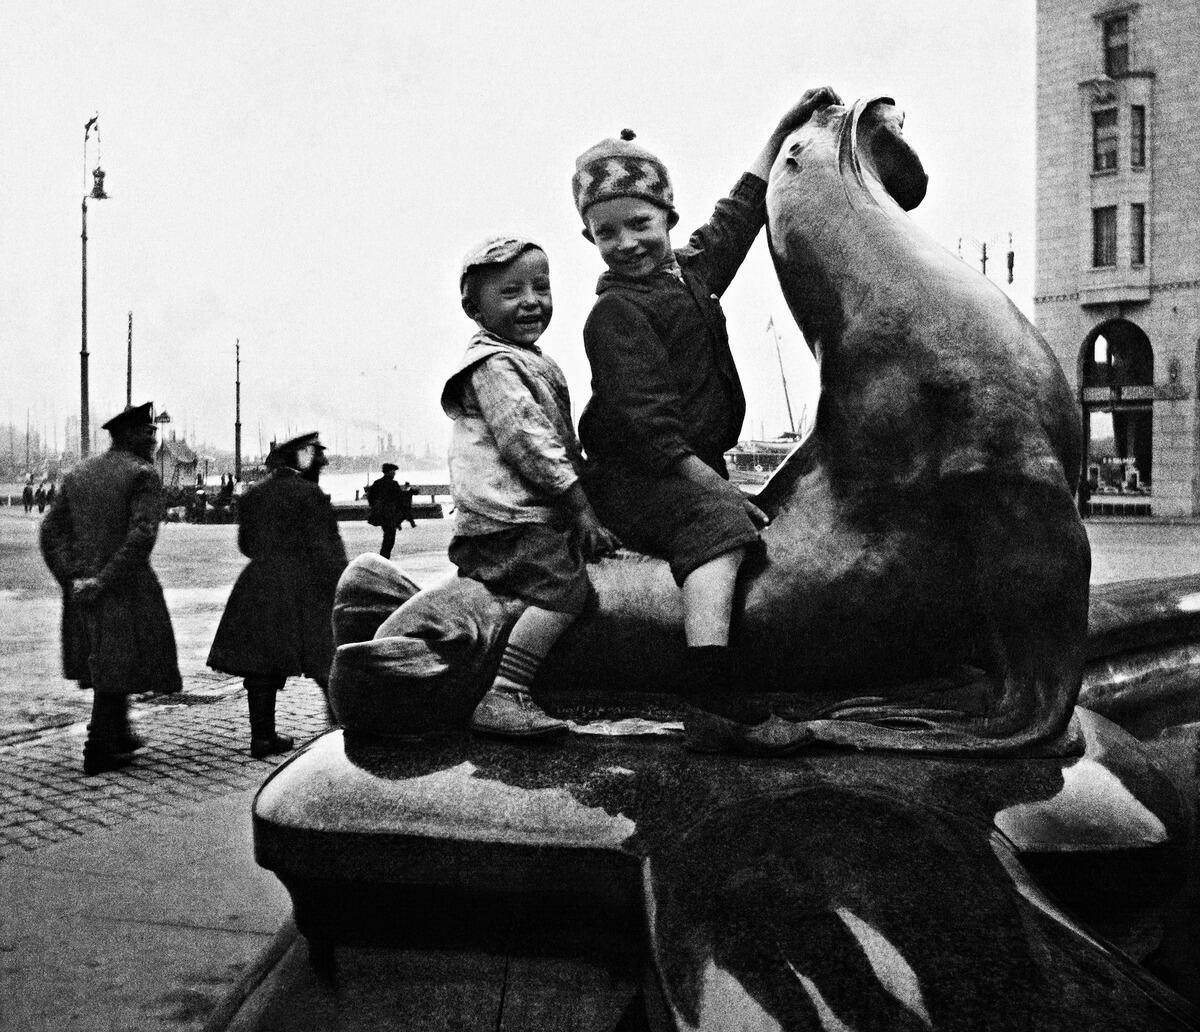 Kaksi lasta ratsastaa hylkeen selässä Havis Amanda -patsaalla Kauppatorilla. Taustalla näkyy ohikulkijoita ja meri.